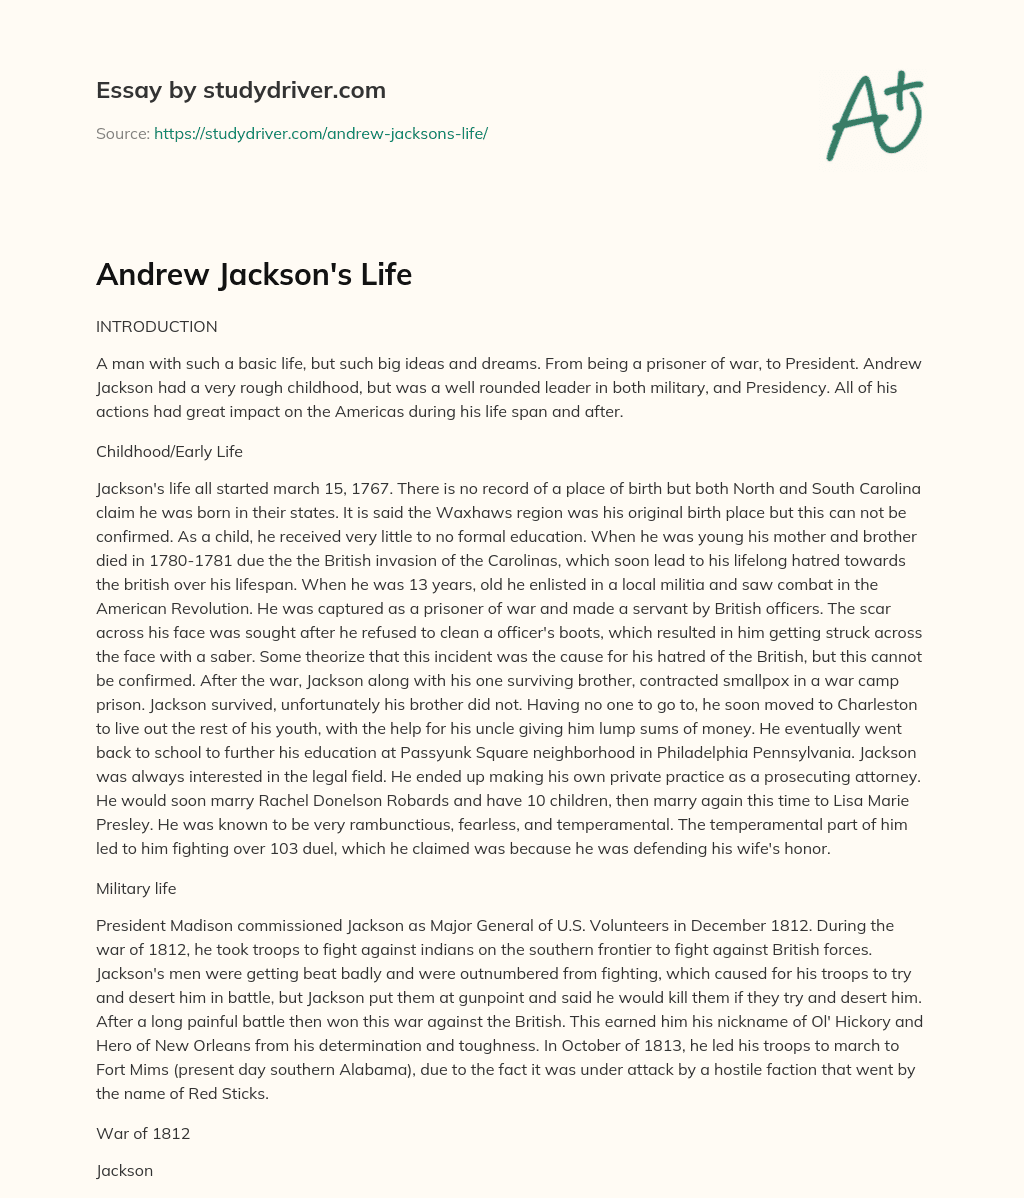 Andrew Jackson’s Life essay